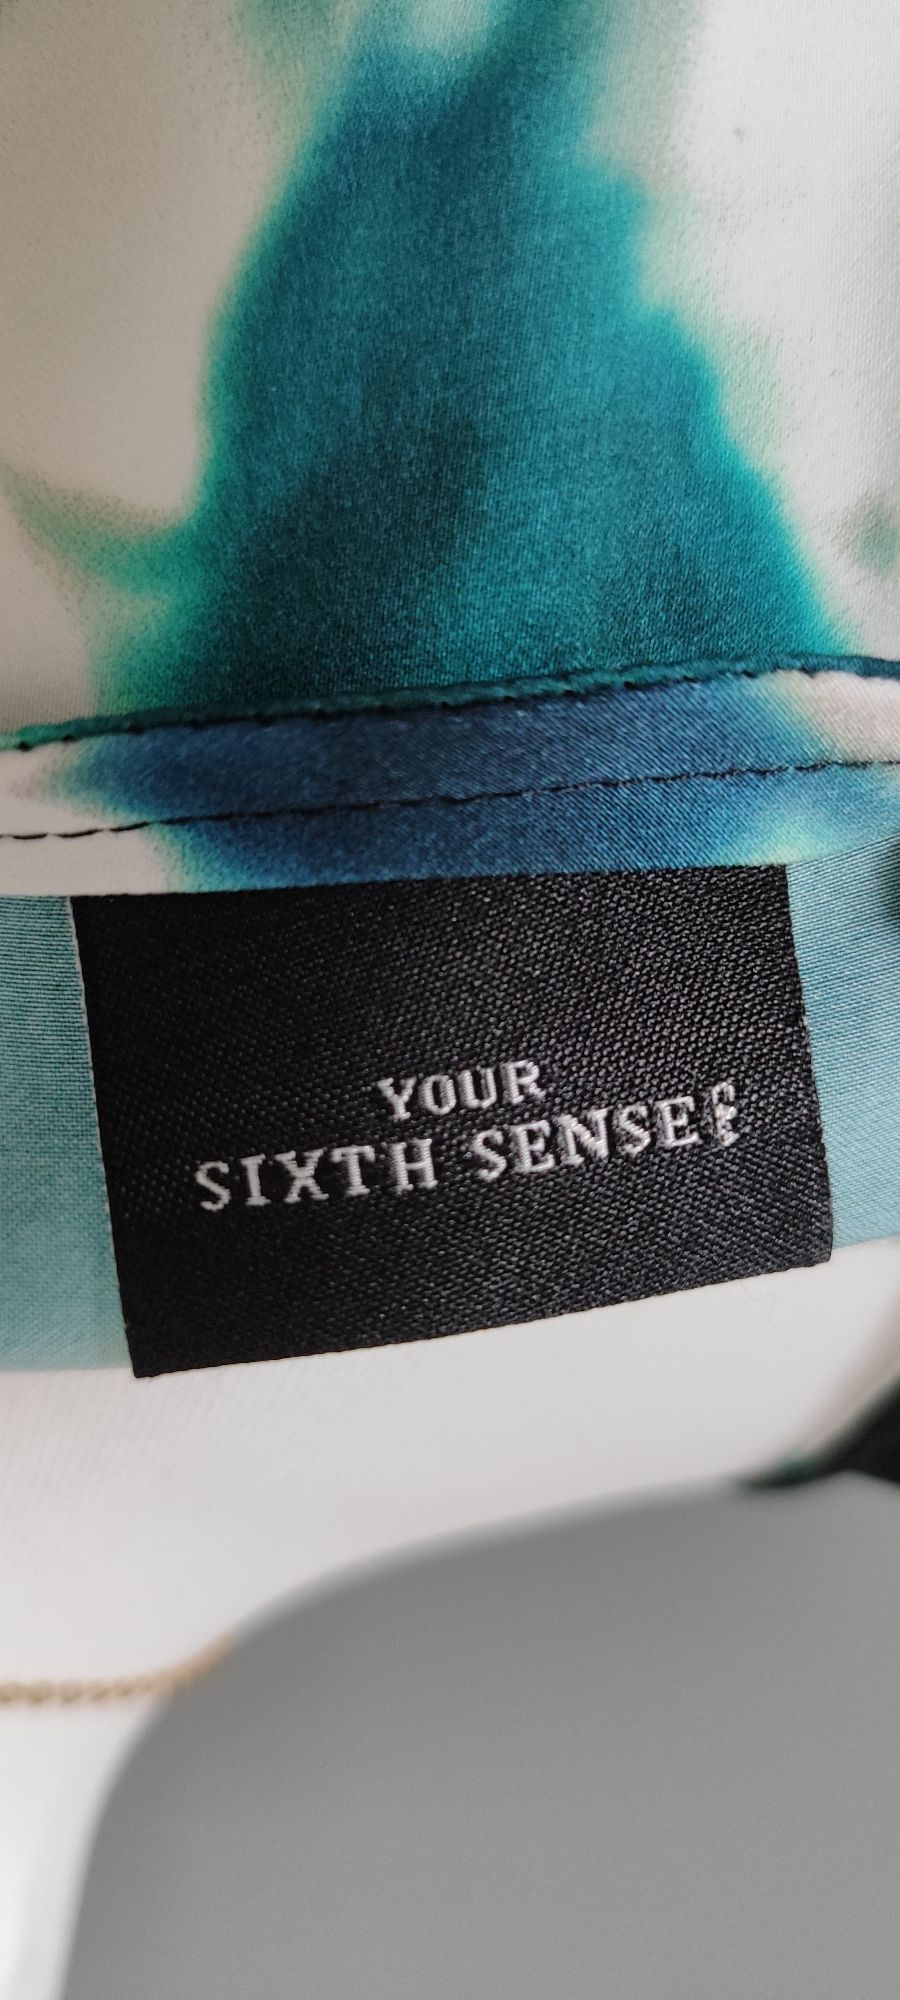 Modna bluzka damska przewiewna wiosna lato Your Sixth Sense. Roz.42/XL